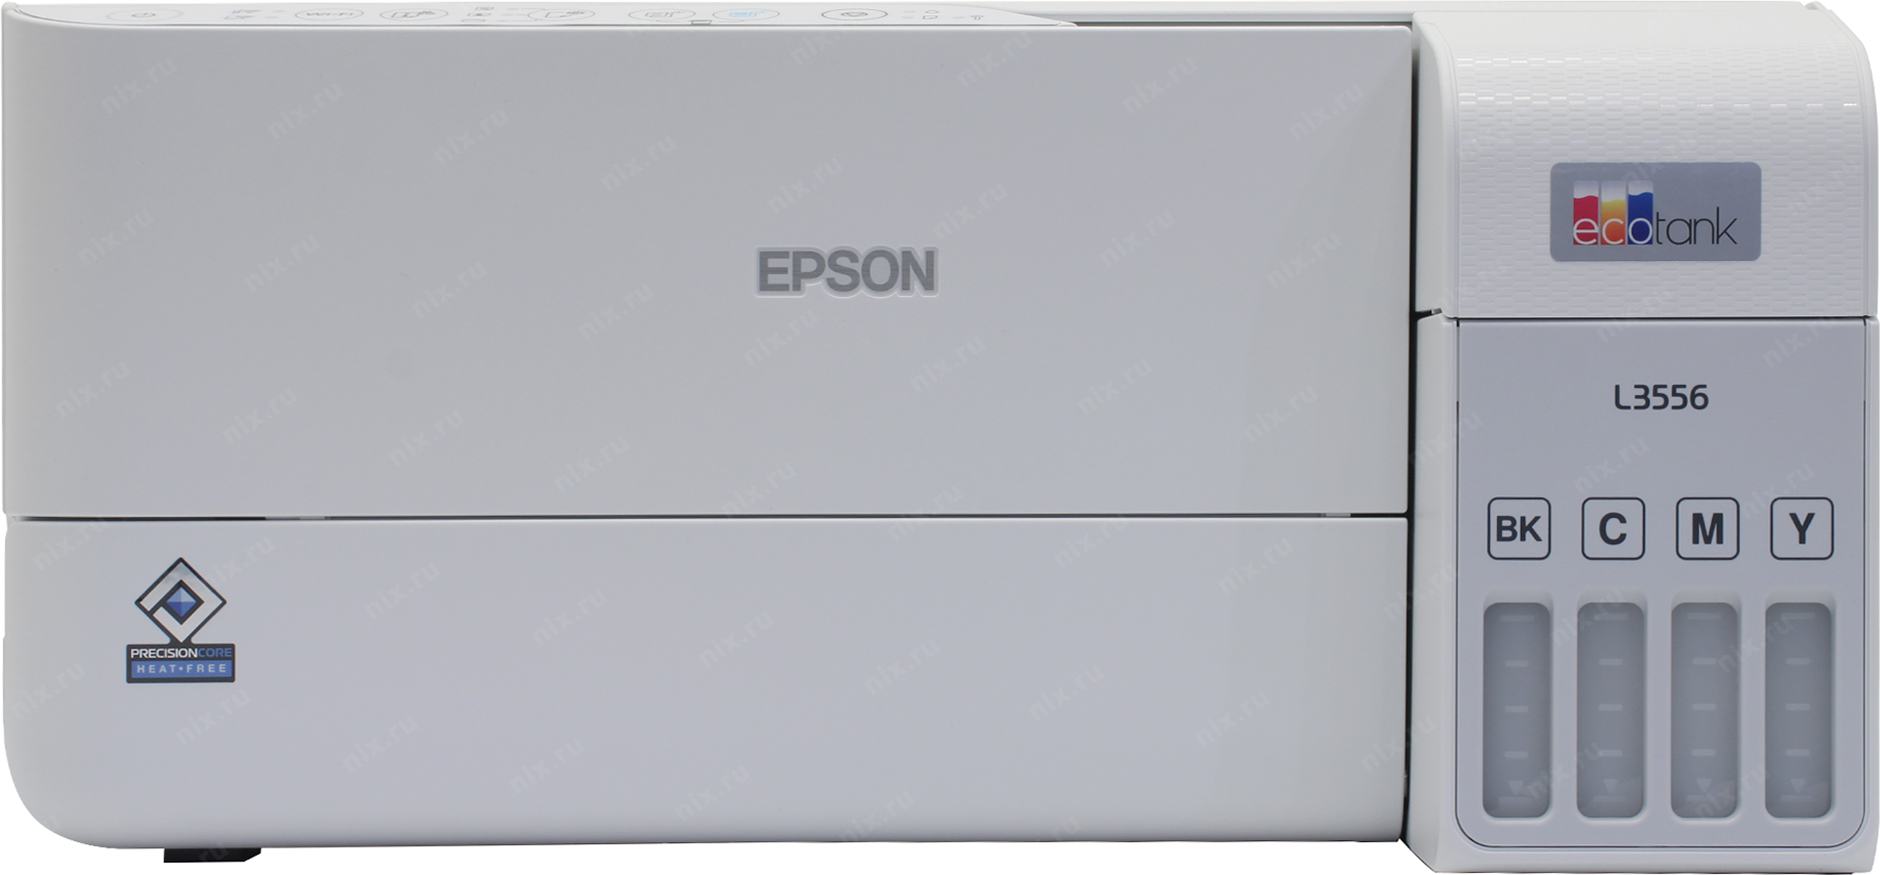 МФУ Epson L3556 цветная печать, A4, 5760x1440 dpi, 33стр/мин (А4),  4-цветная, USB,WiFi СНПЧ, чернила (003),  C11CK59504